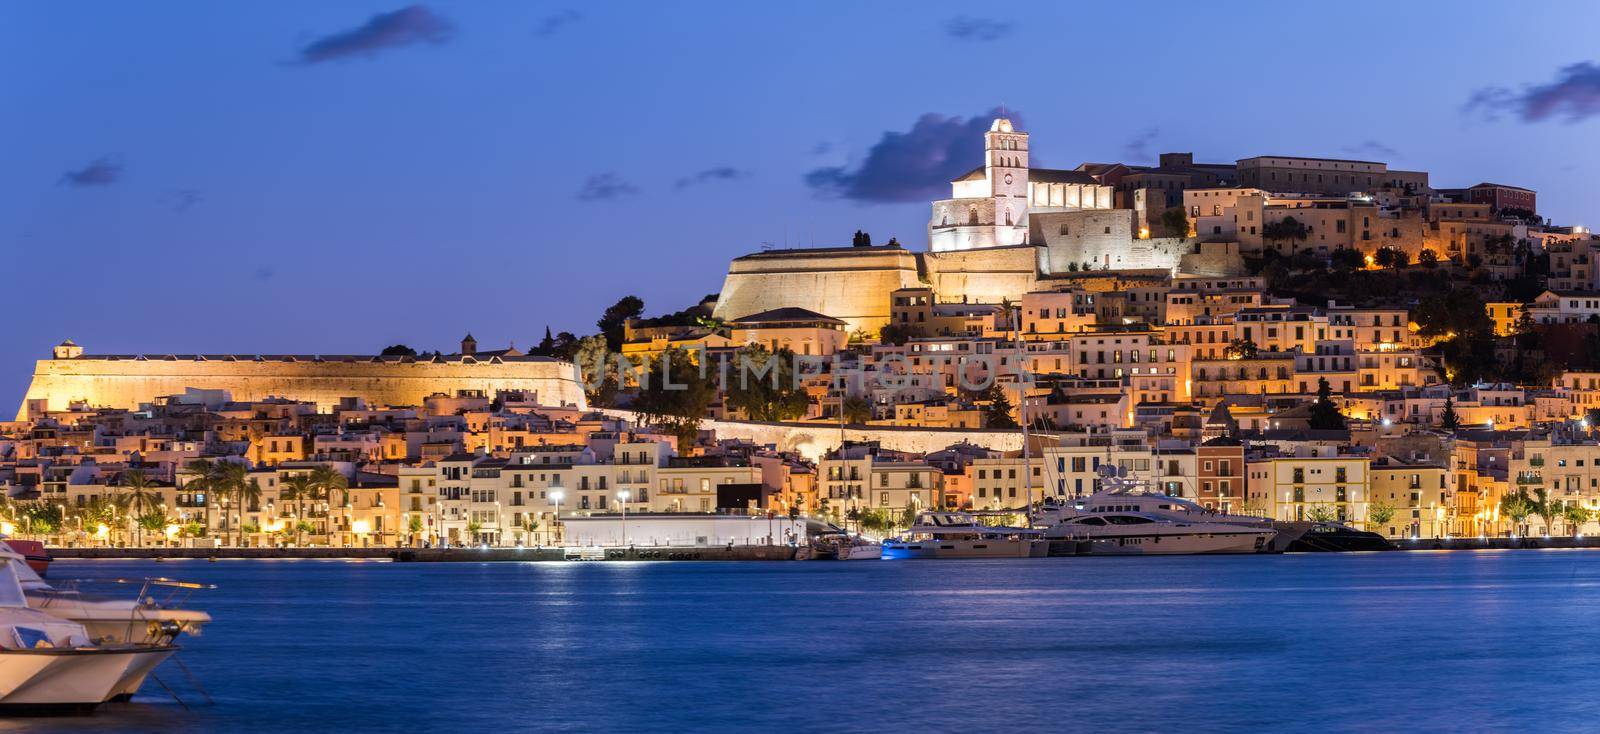 Cityscape of Dalt Vila from Marina Ibiza, Ibiza, Spain by martinscphoto